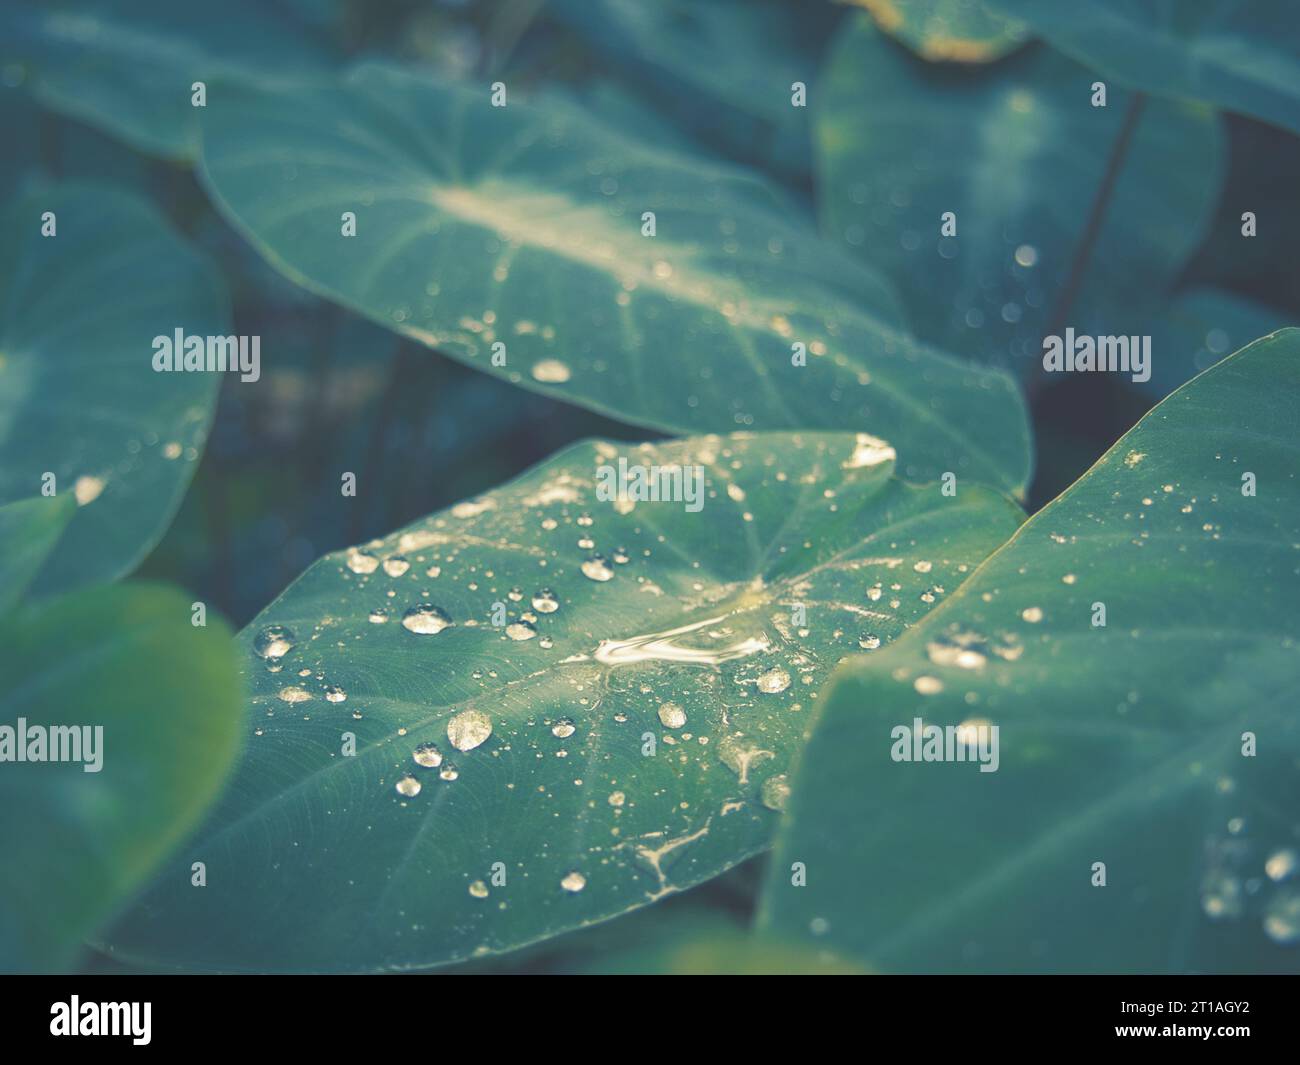 Immagine sbiadita di gocce di pioggia dewy su grandi foglie di piante di taro con orecchio di elefante, bella sfumatura di verde, alle Hawaii. Immagine per testo o sfondo. Foto Stock